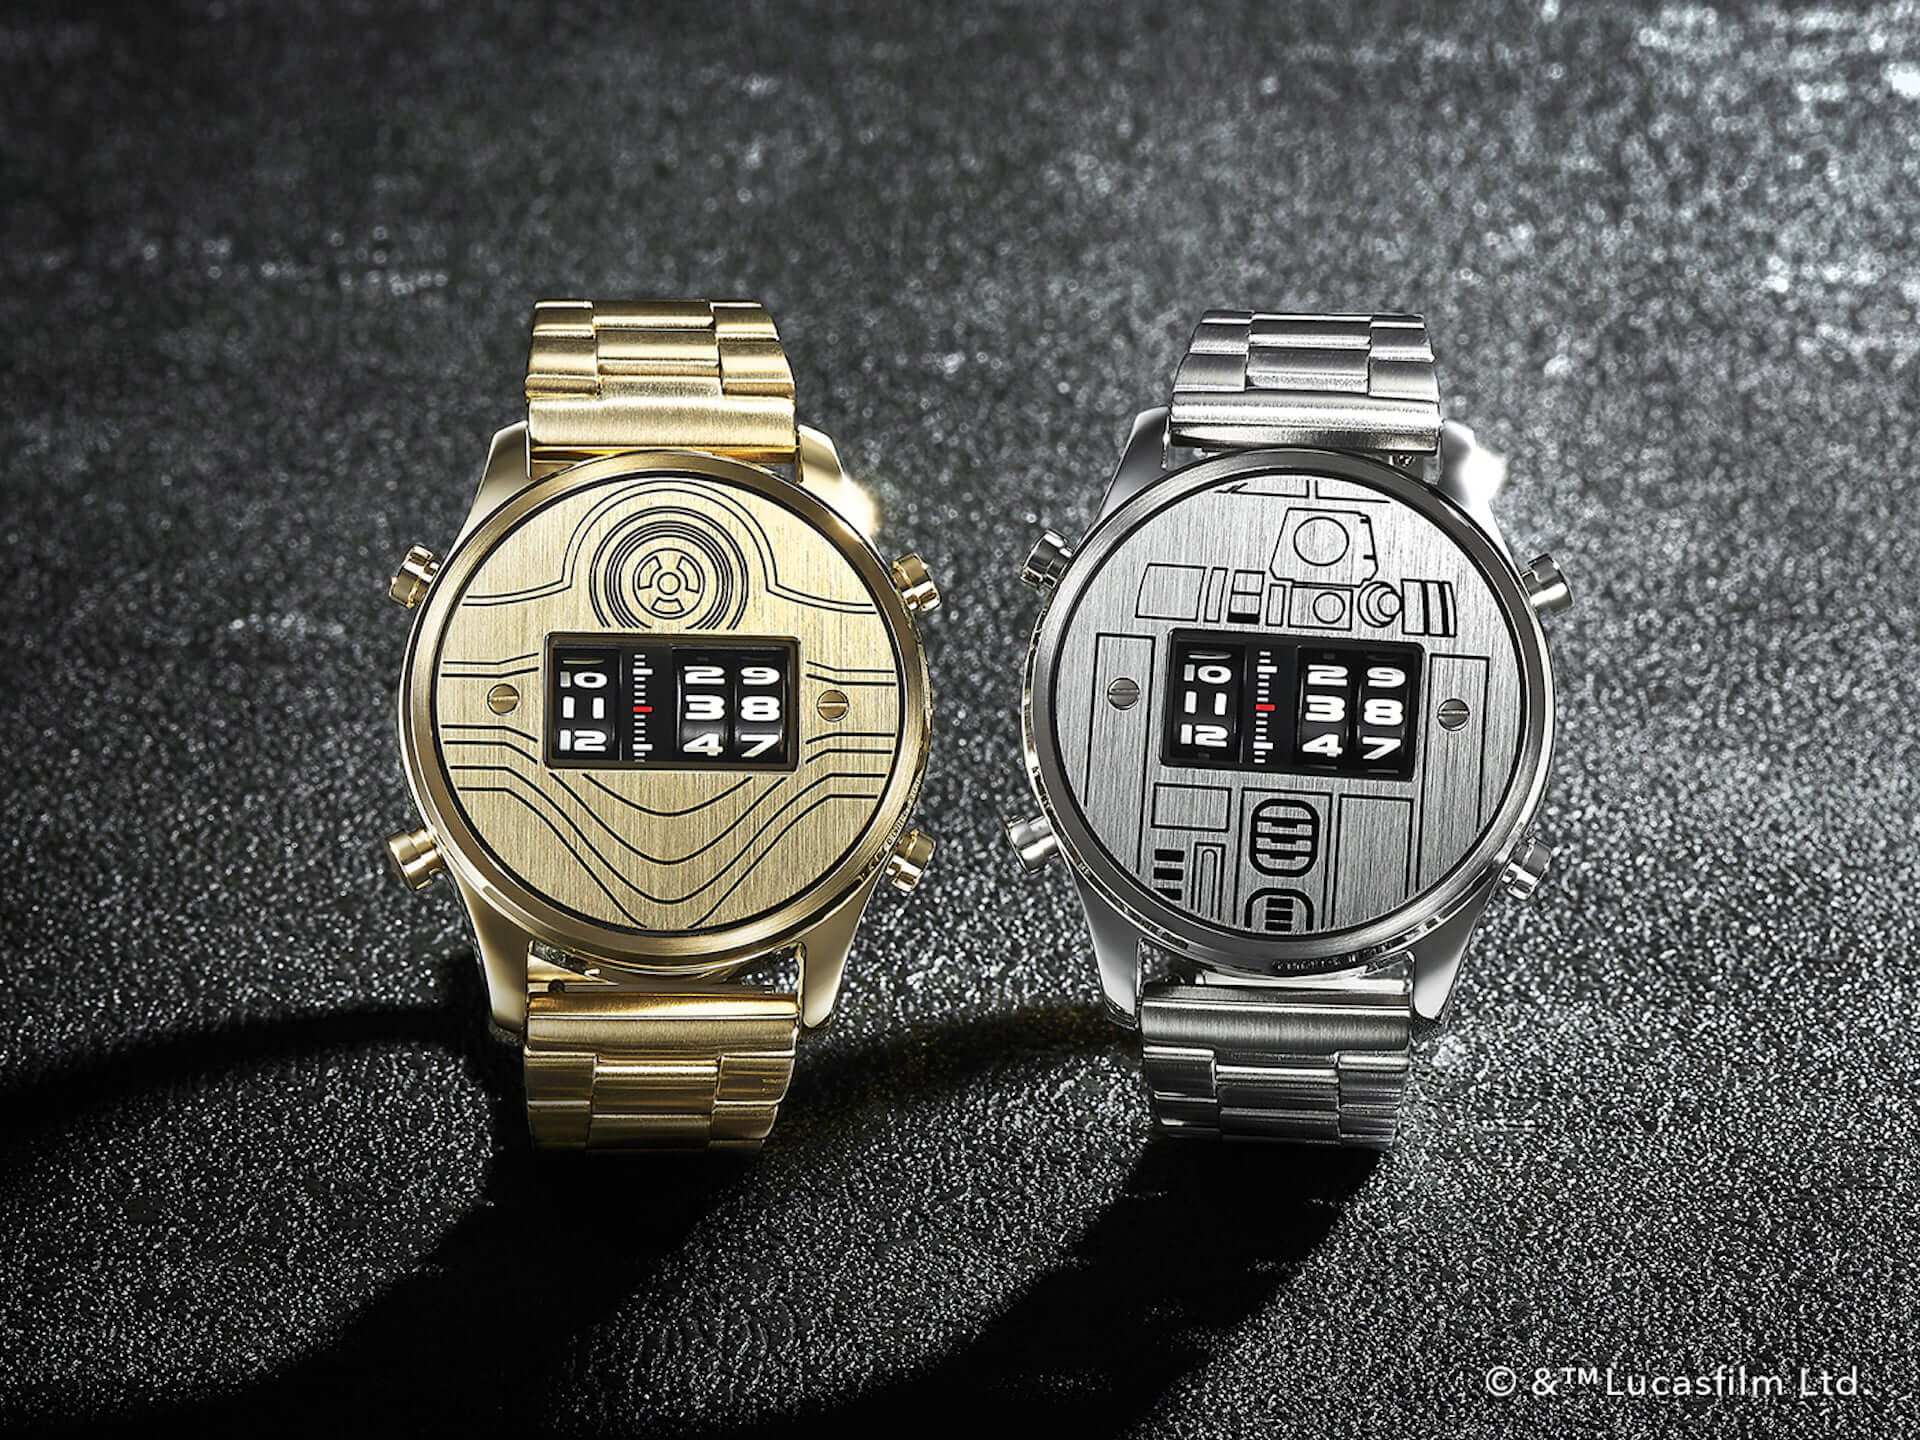 R2 D2 C 3po ダース ベイダーがローラー式腕時計に スター ウォーズ Future Funk オリジナルデザインが登場 Qetic